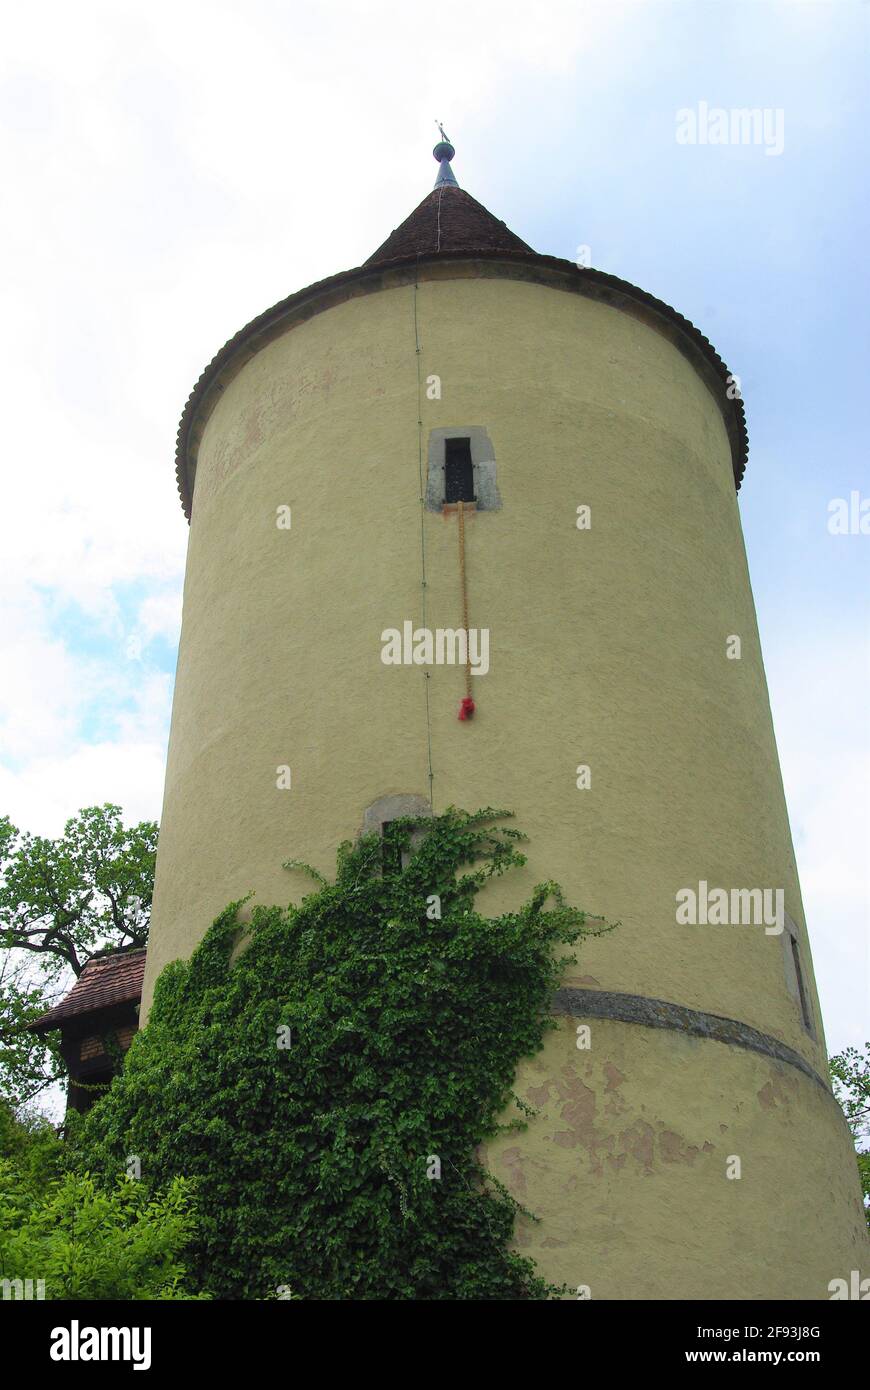 Le conte de fées Raiponce tire-bouchon suspendu de la tour de guet à Dinkelsbuhl, Bavière, Allemagne Banque D'Images